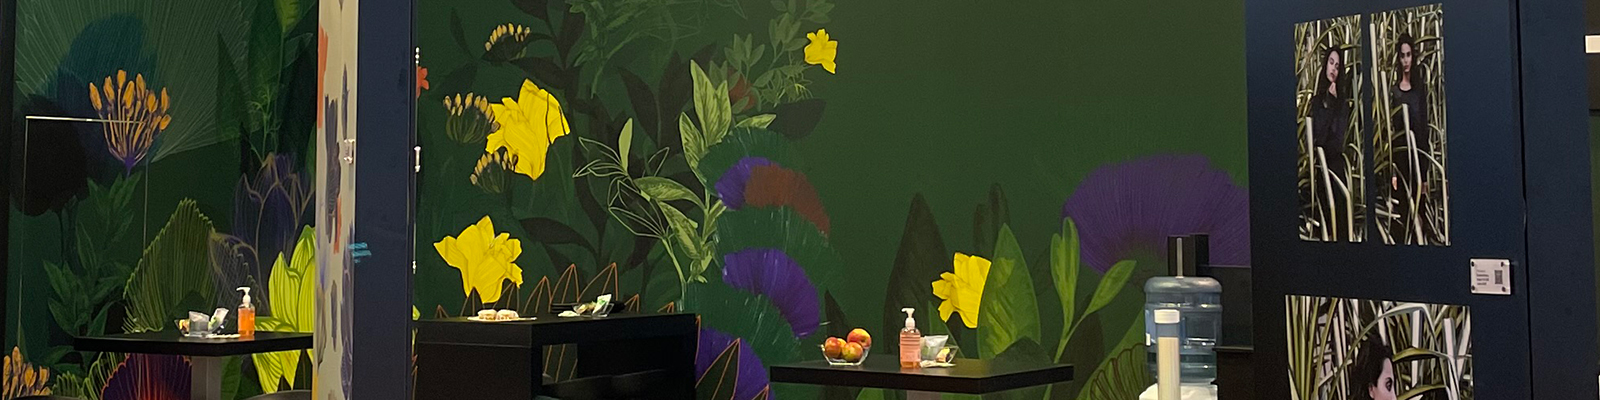 Selbstklebefolien mit Luftkanalkleber - Wand Messestand mit dunkelgrünem Hintergrundmotiv und gelben Blüten